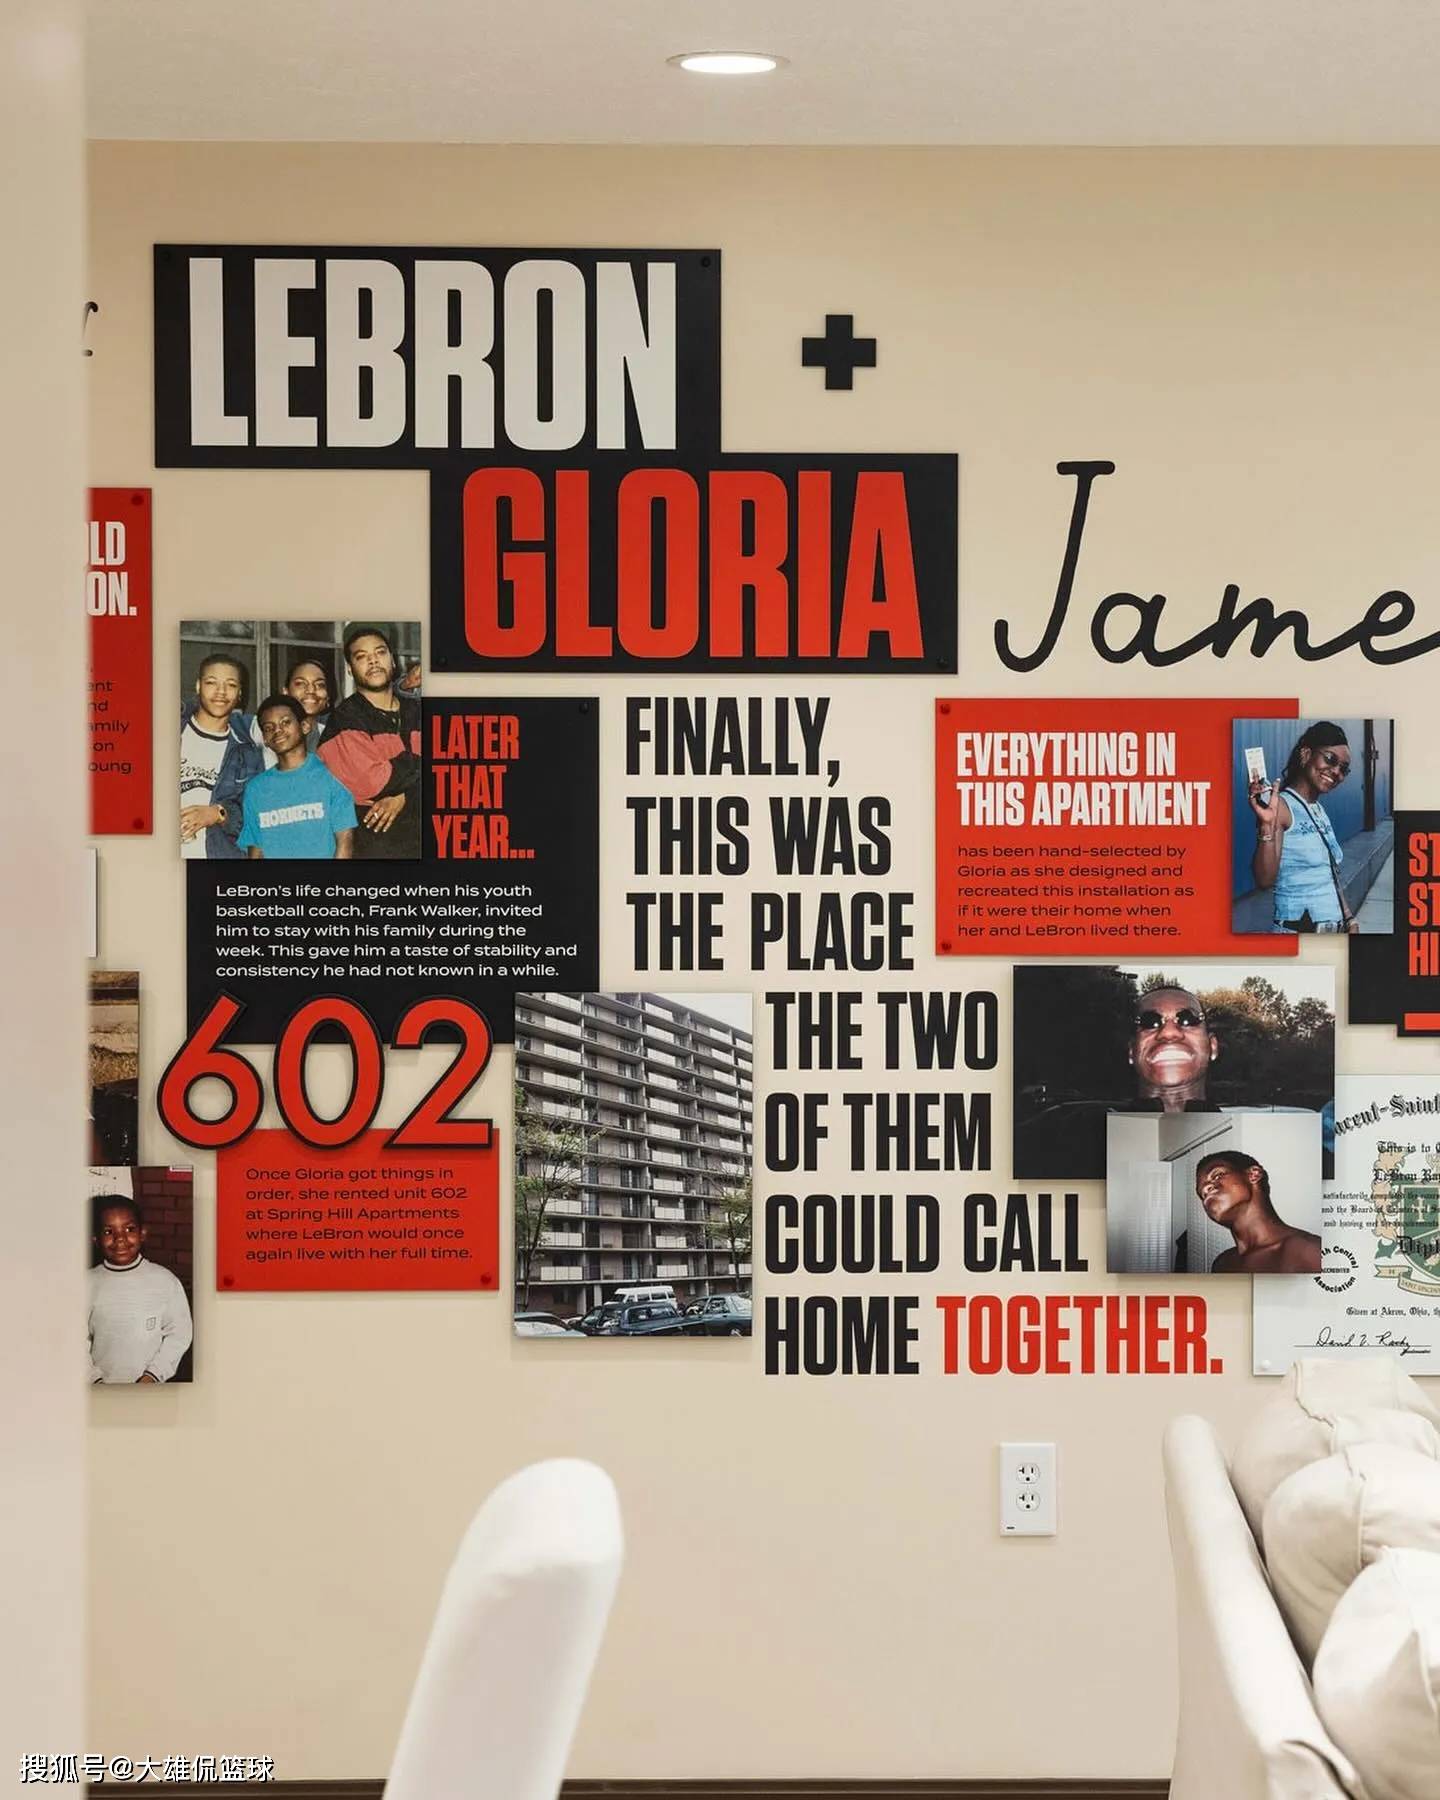 篮球-詹姆斯再创篮球历史篮球，打造属于自己的篮球博物馆，票价高达23美元